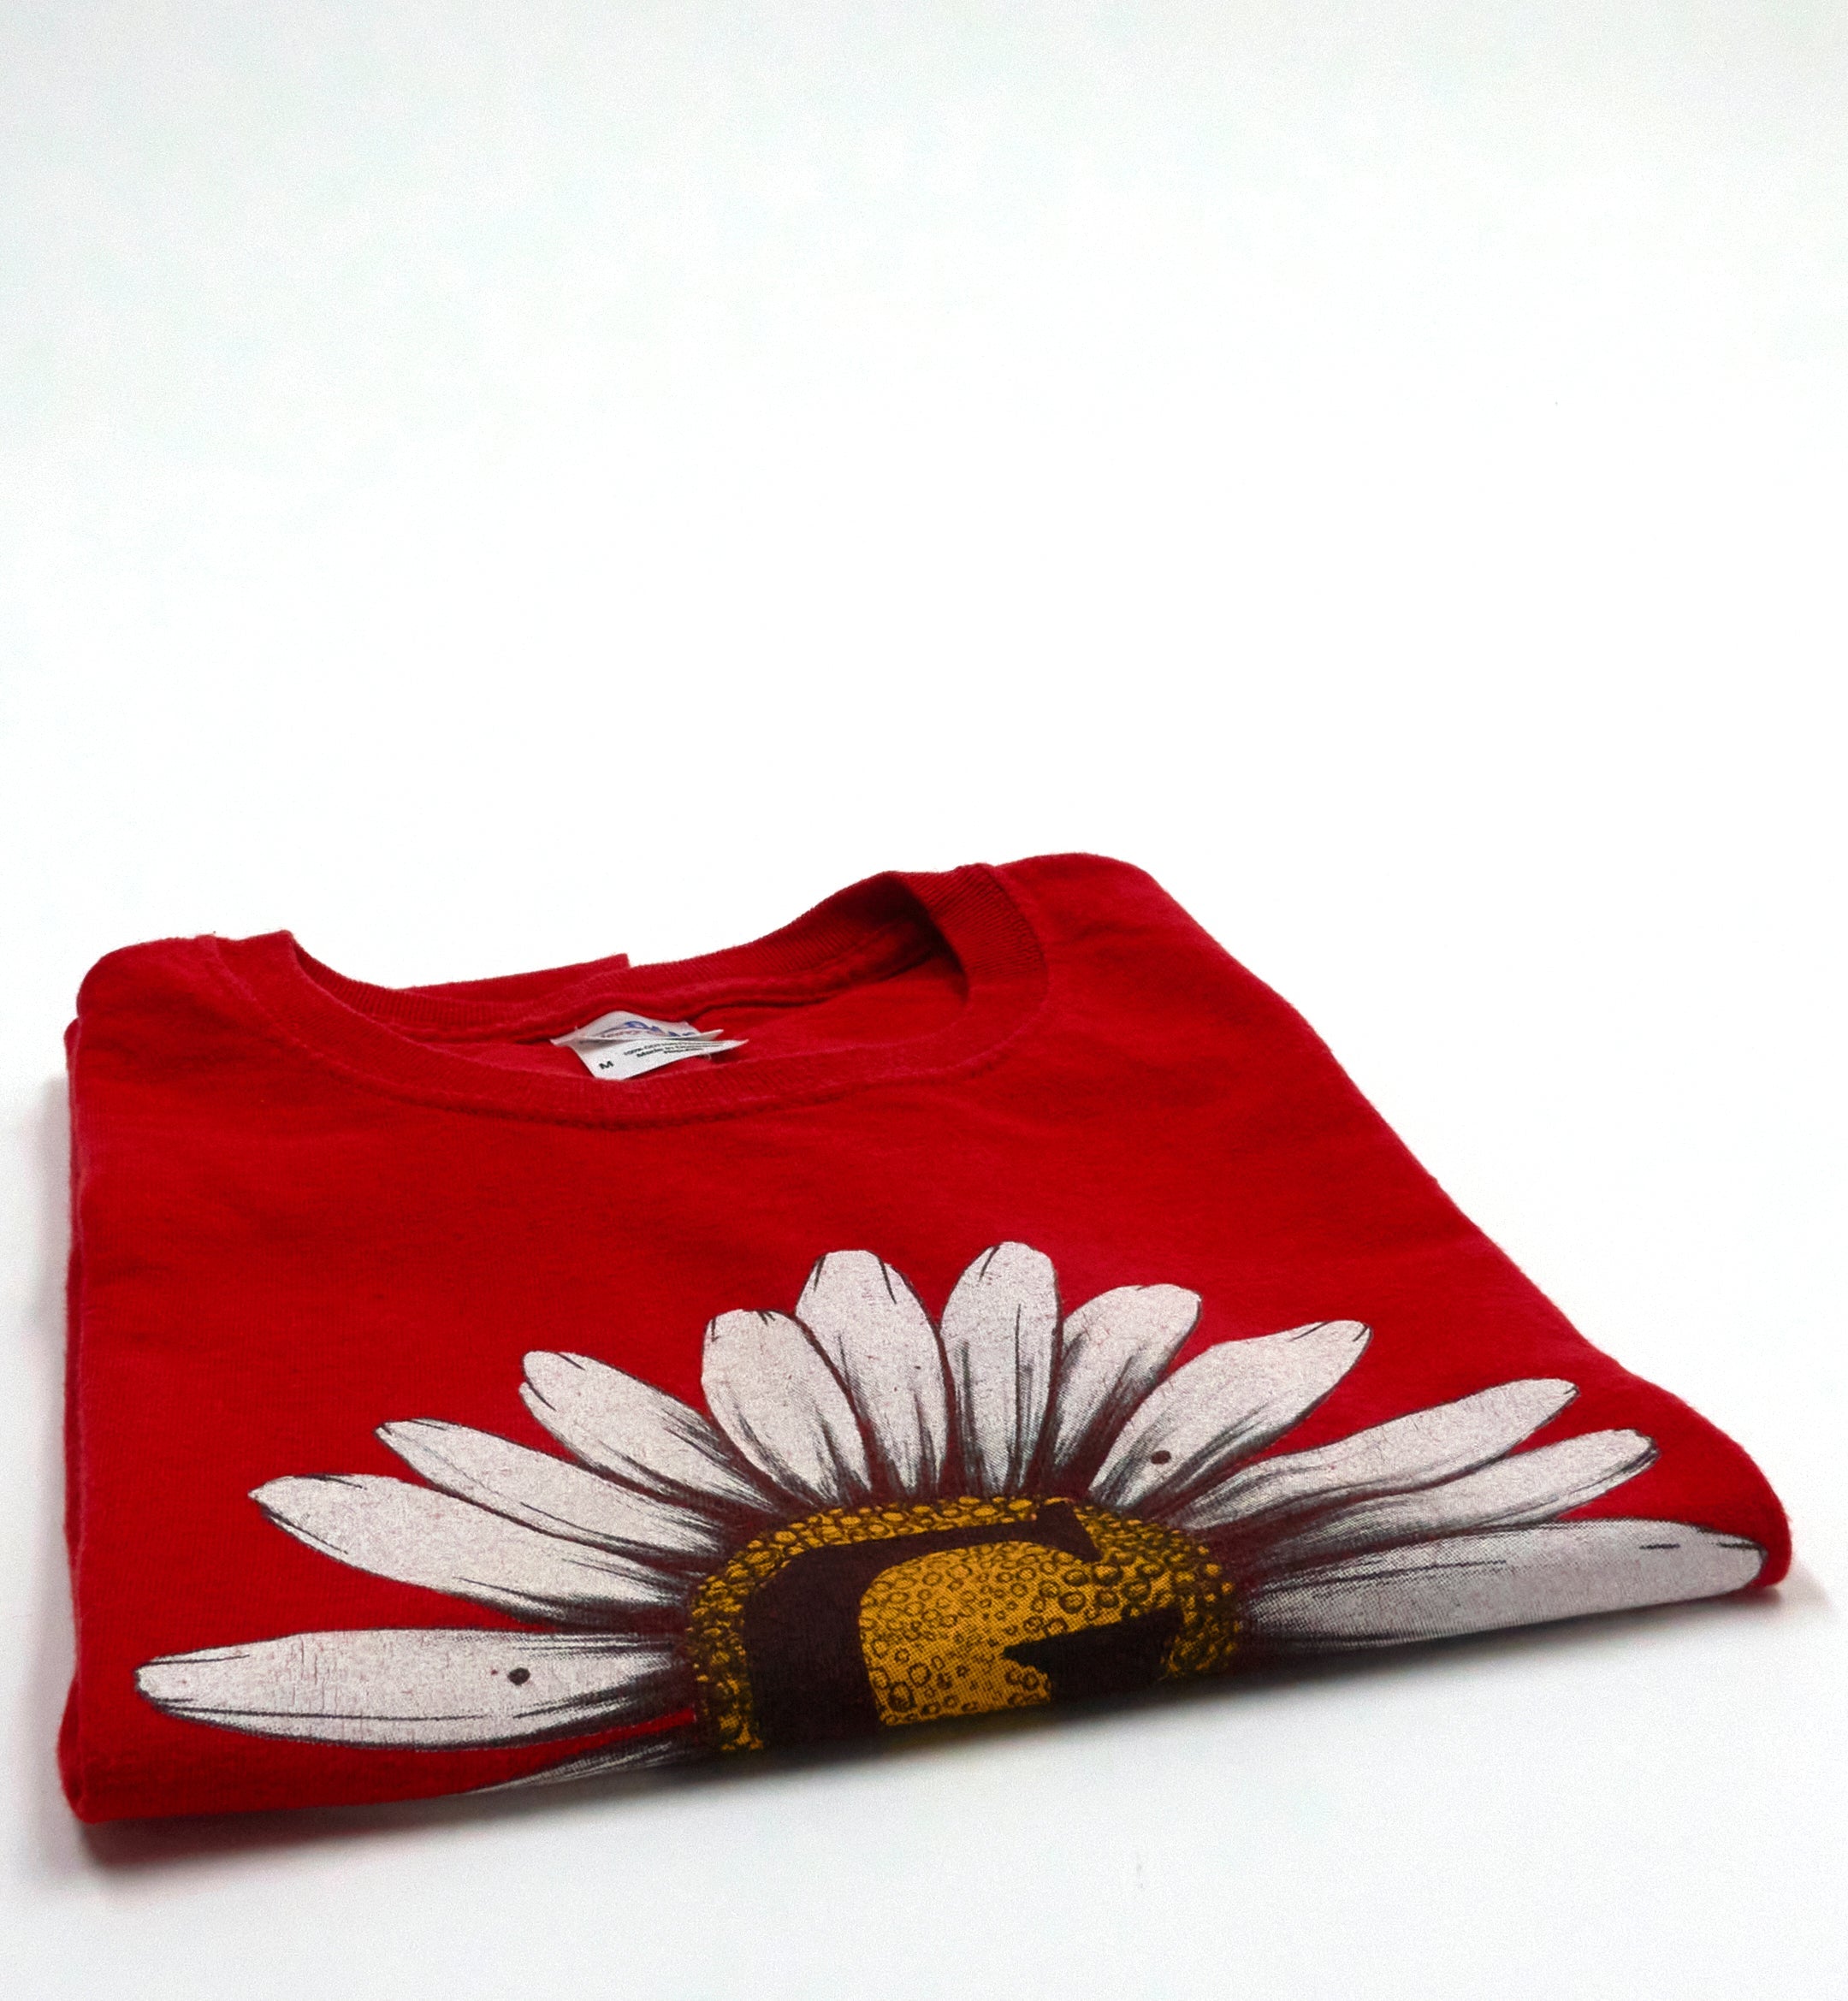 Give – Yellow Flower Revelation Logo Back Tour Shirt Size Medium